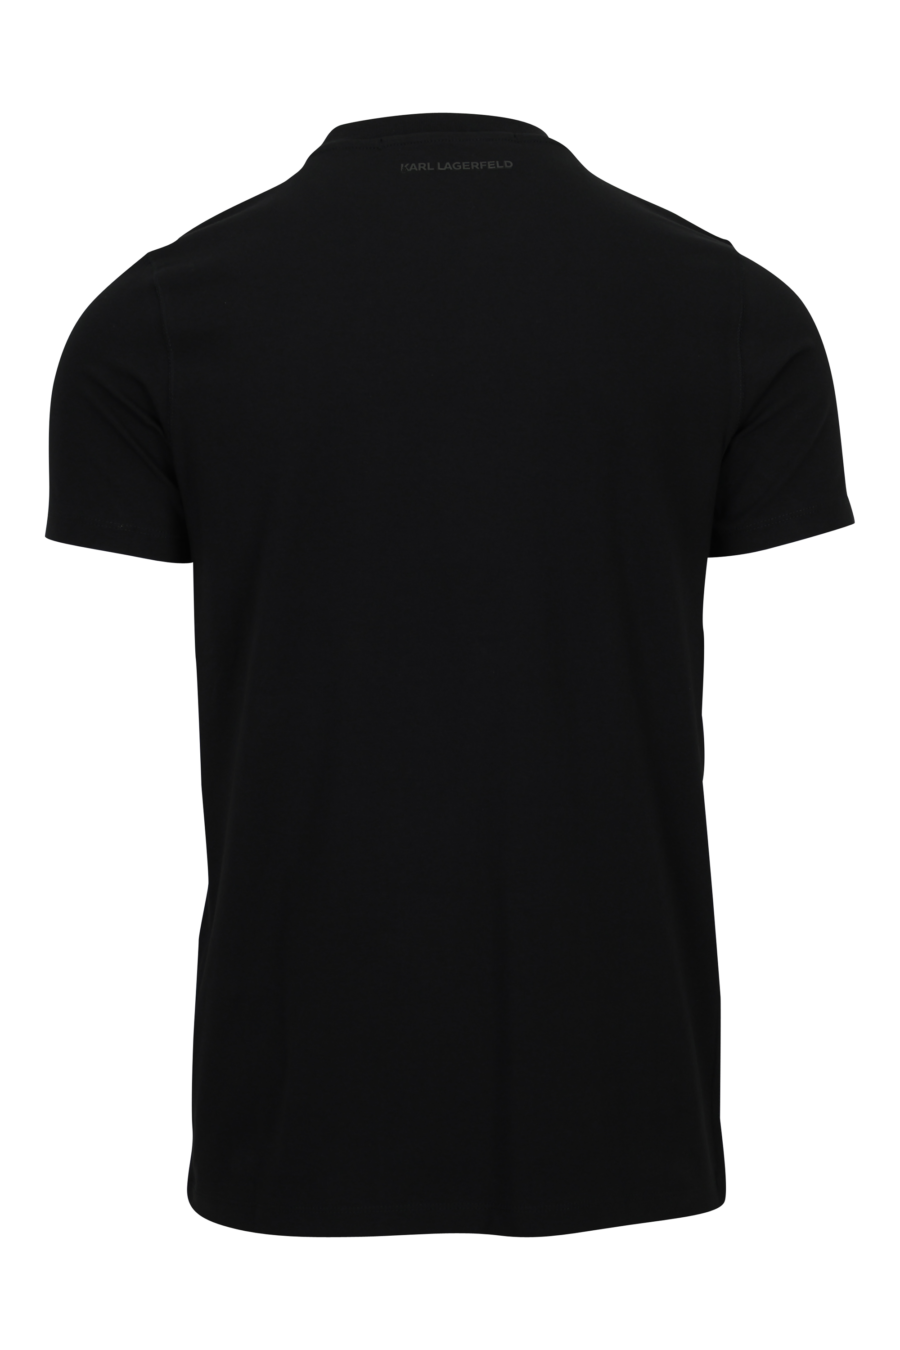 Camiseta negra con maxilogo de goma en degradé - 4062226789127 1